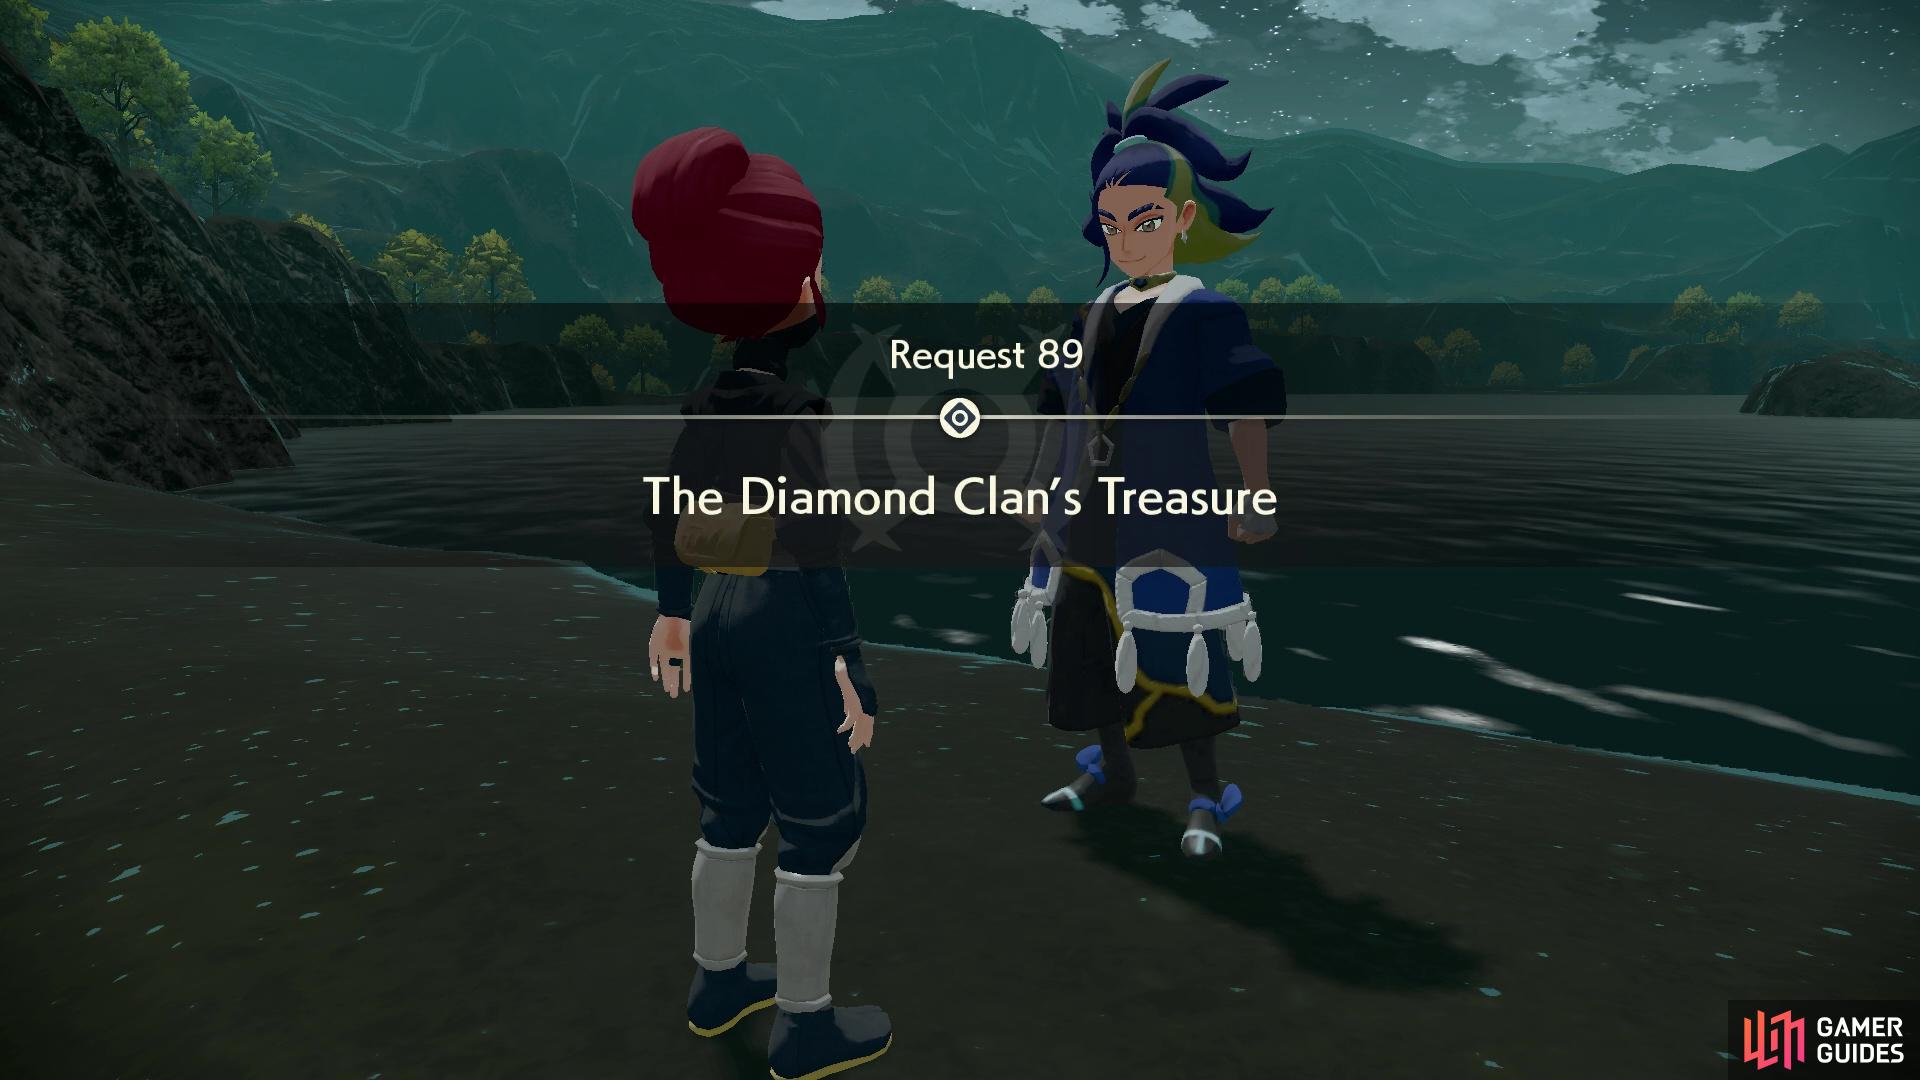 Request 89: The Diamond Clan’s Treasure.